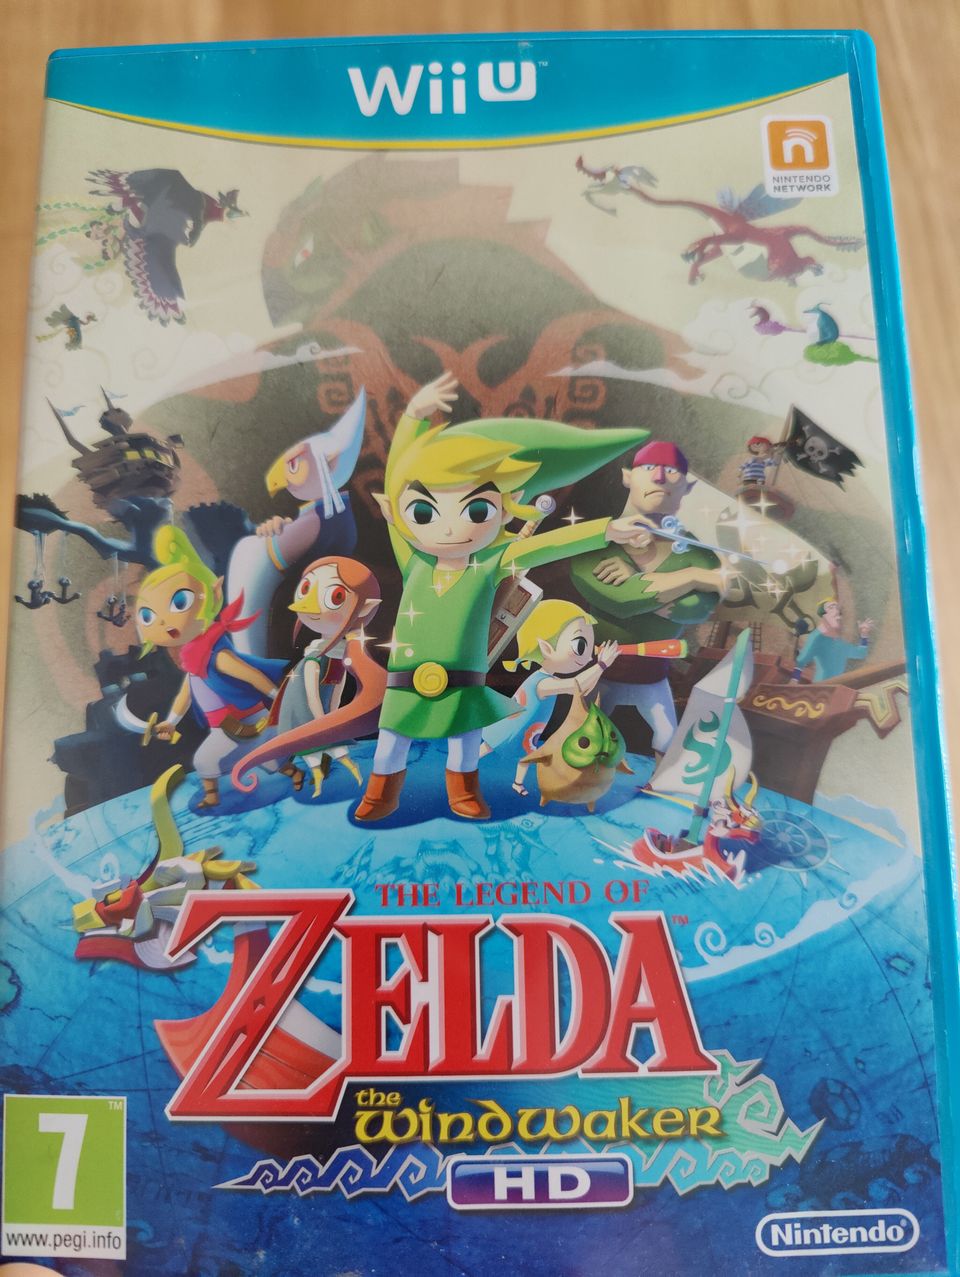 The Legend of Zelda: The Windwaker